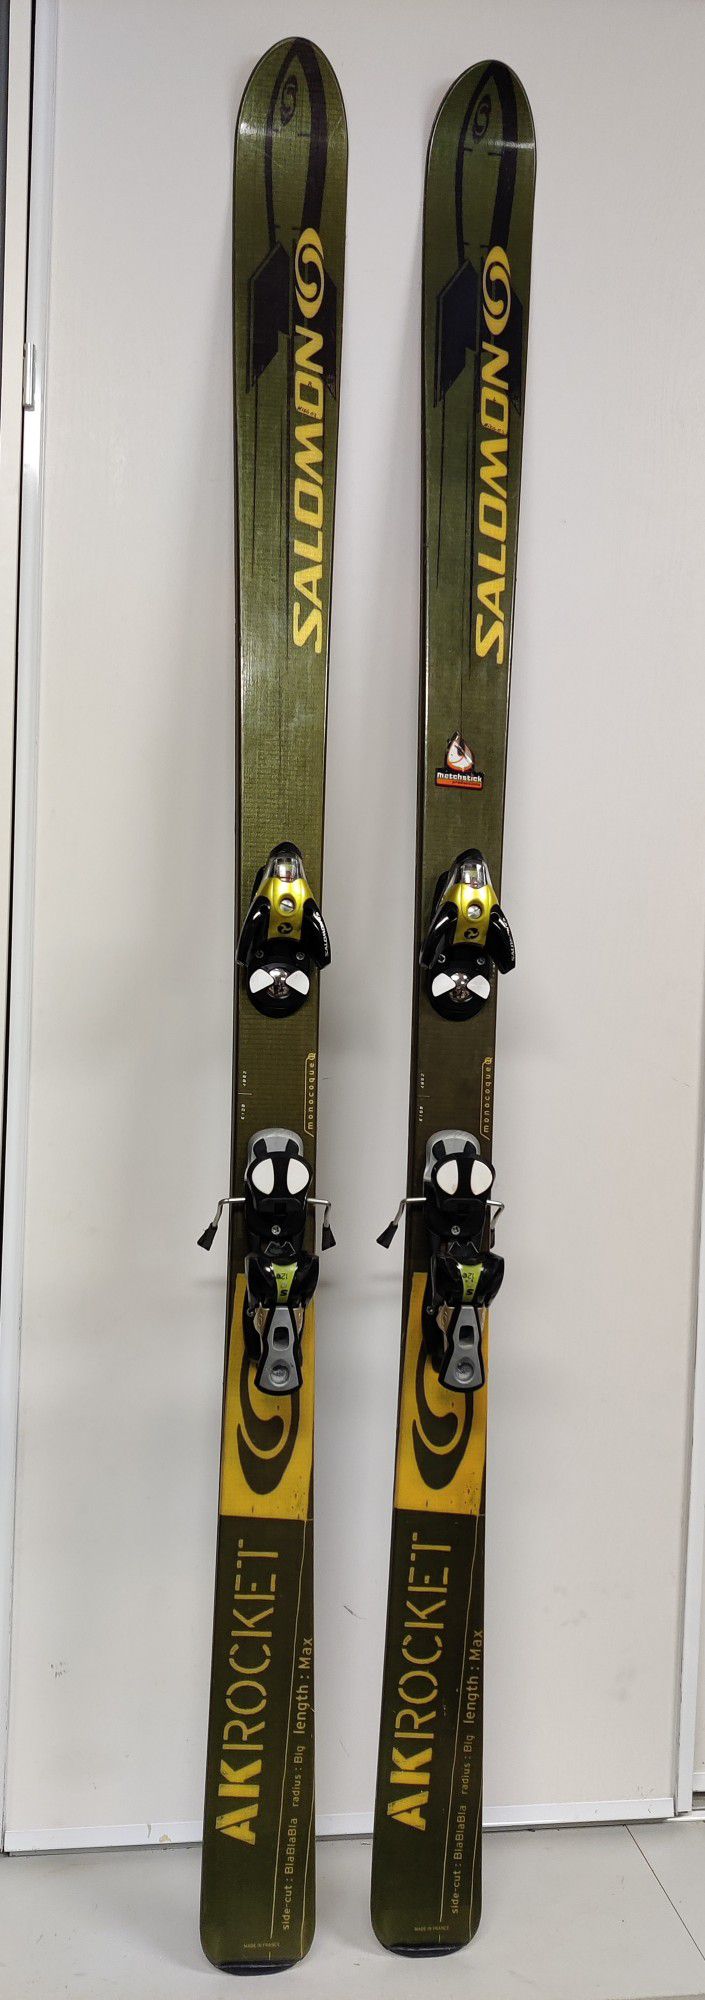 Salomon AK Rocket Skis 187 cm And Salomon S 912 Bindings 